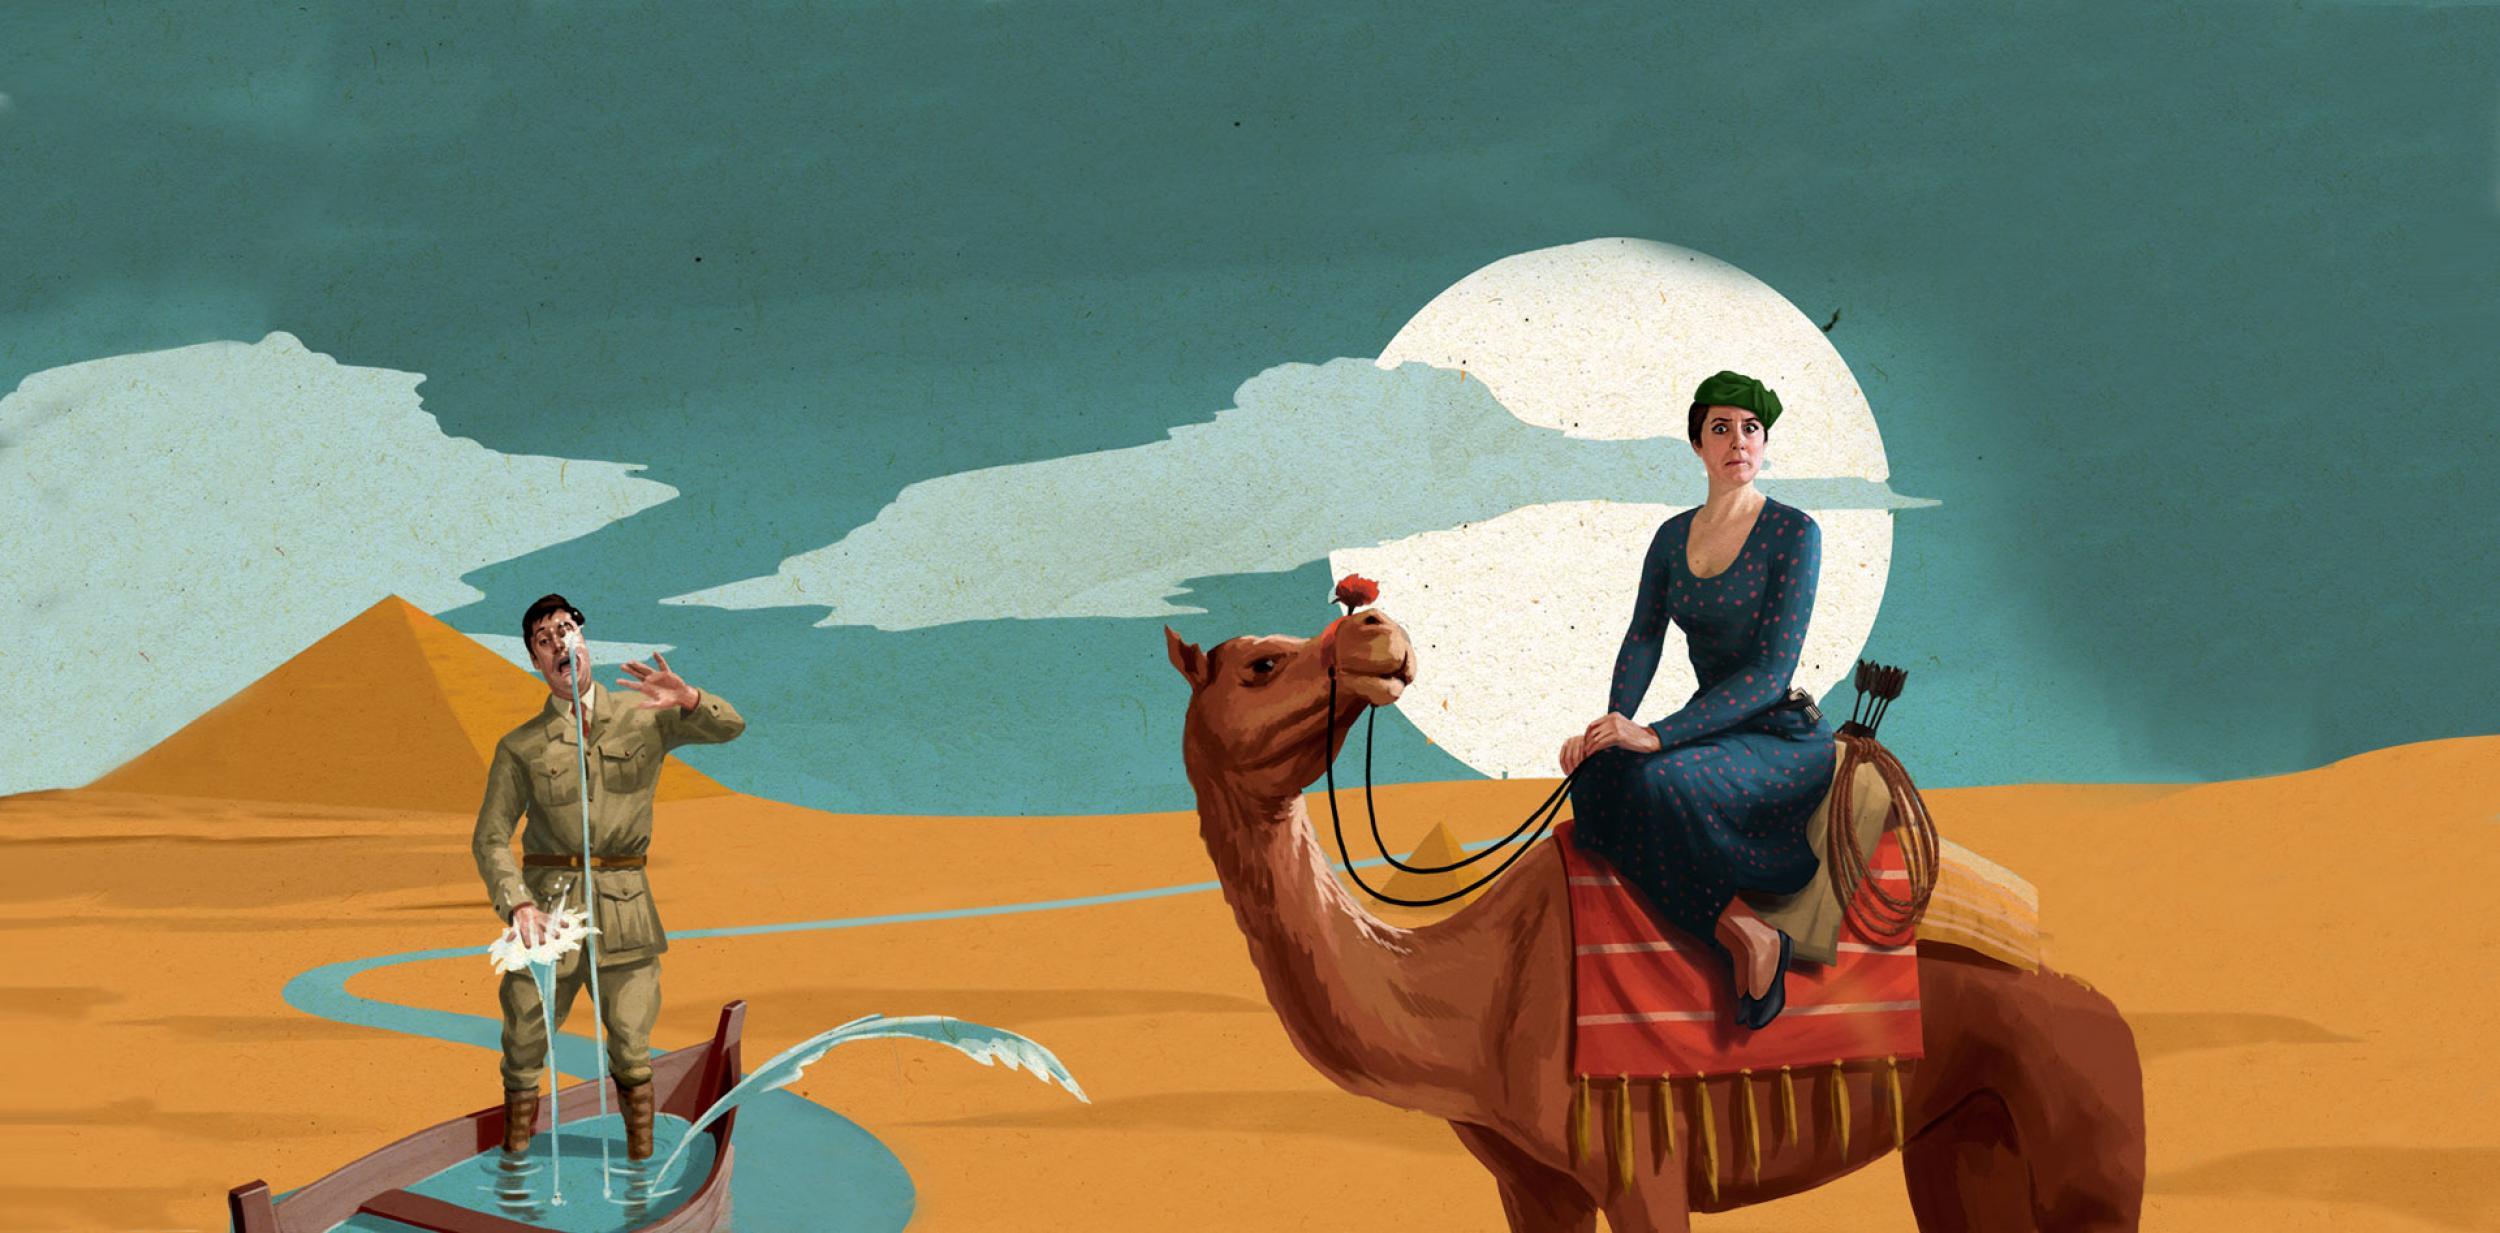 Illustration of Egypt